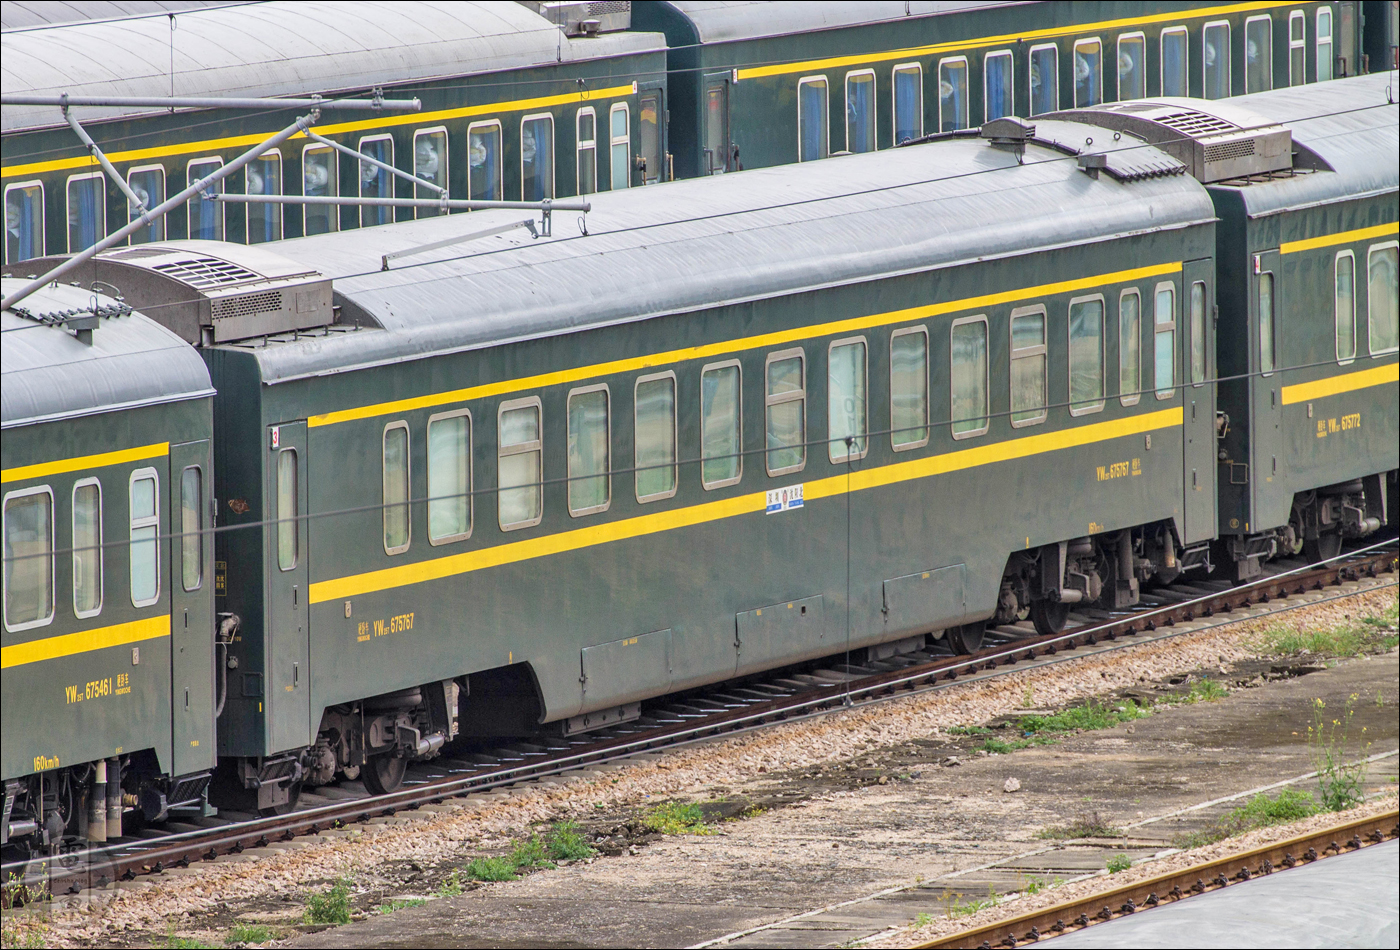 China Railways 25T sorozatú személykocsi. A 25,5m hosszú, 3,105m széles, 4,433m magas, legfeljebb 160km/h-val továbbítható kocsik 2004 óta állnak sorozatgyártásban, melyért a CRRC Sifang, a CRRC Nanjing Puzhen, a CRRC Tangshan, a CRRC Changchun és a Bombardier-Sifang felel. Hasonló, ám hermetikusan zárt, oxigénfejlesztőkkel is ellátott változatokat találhatunk a Lhasa felé közlekedő járatokban.